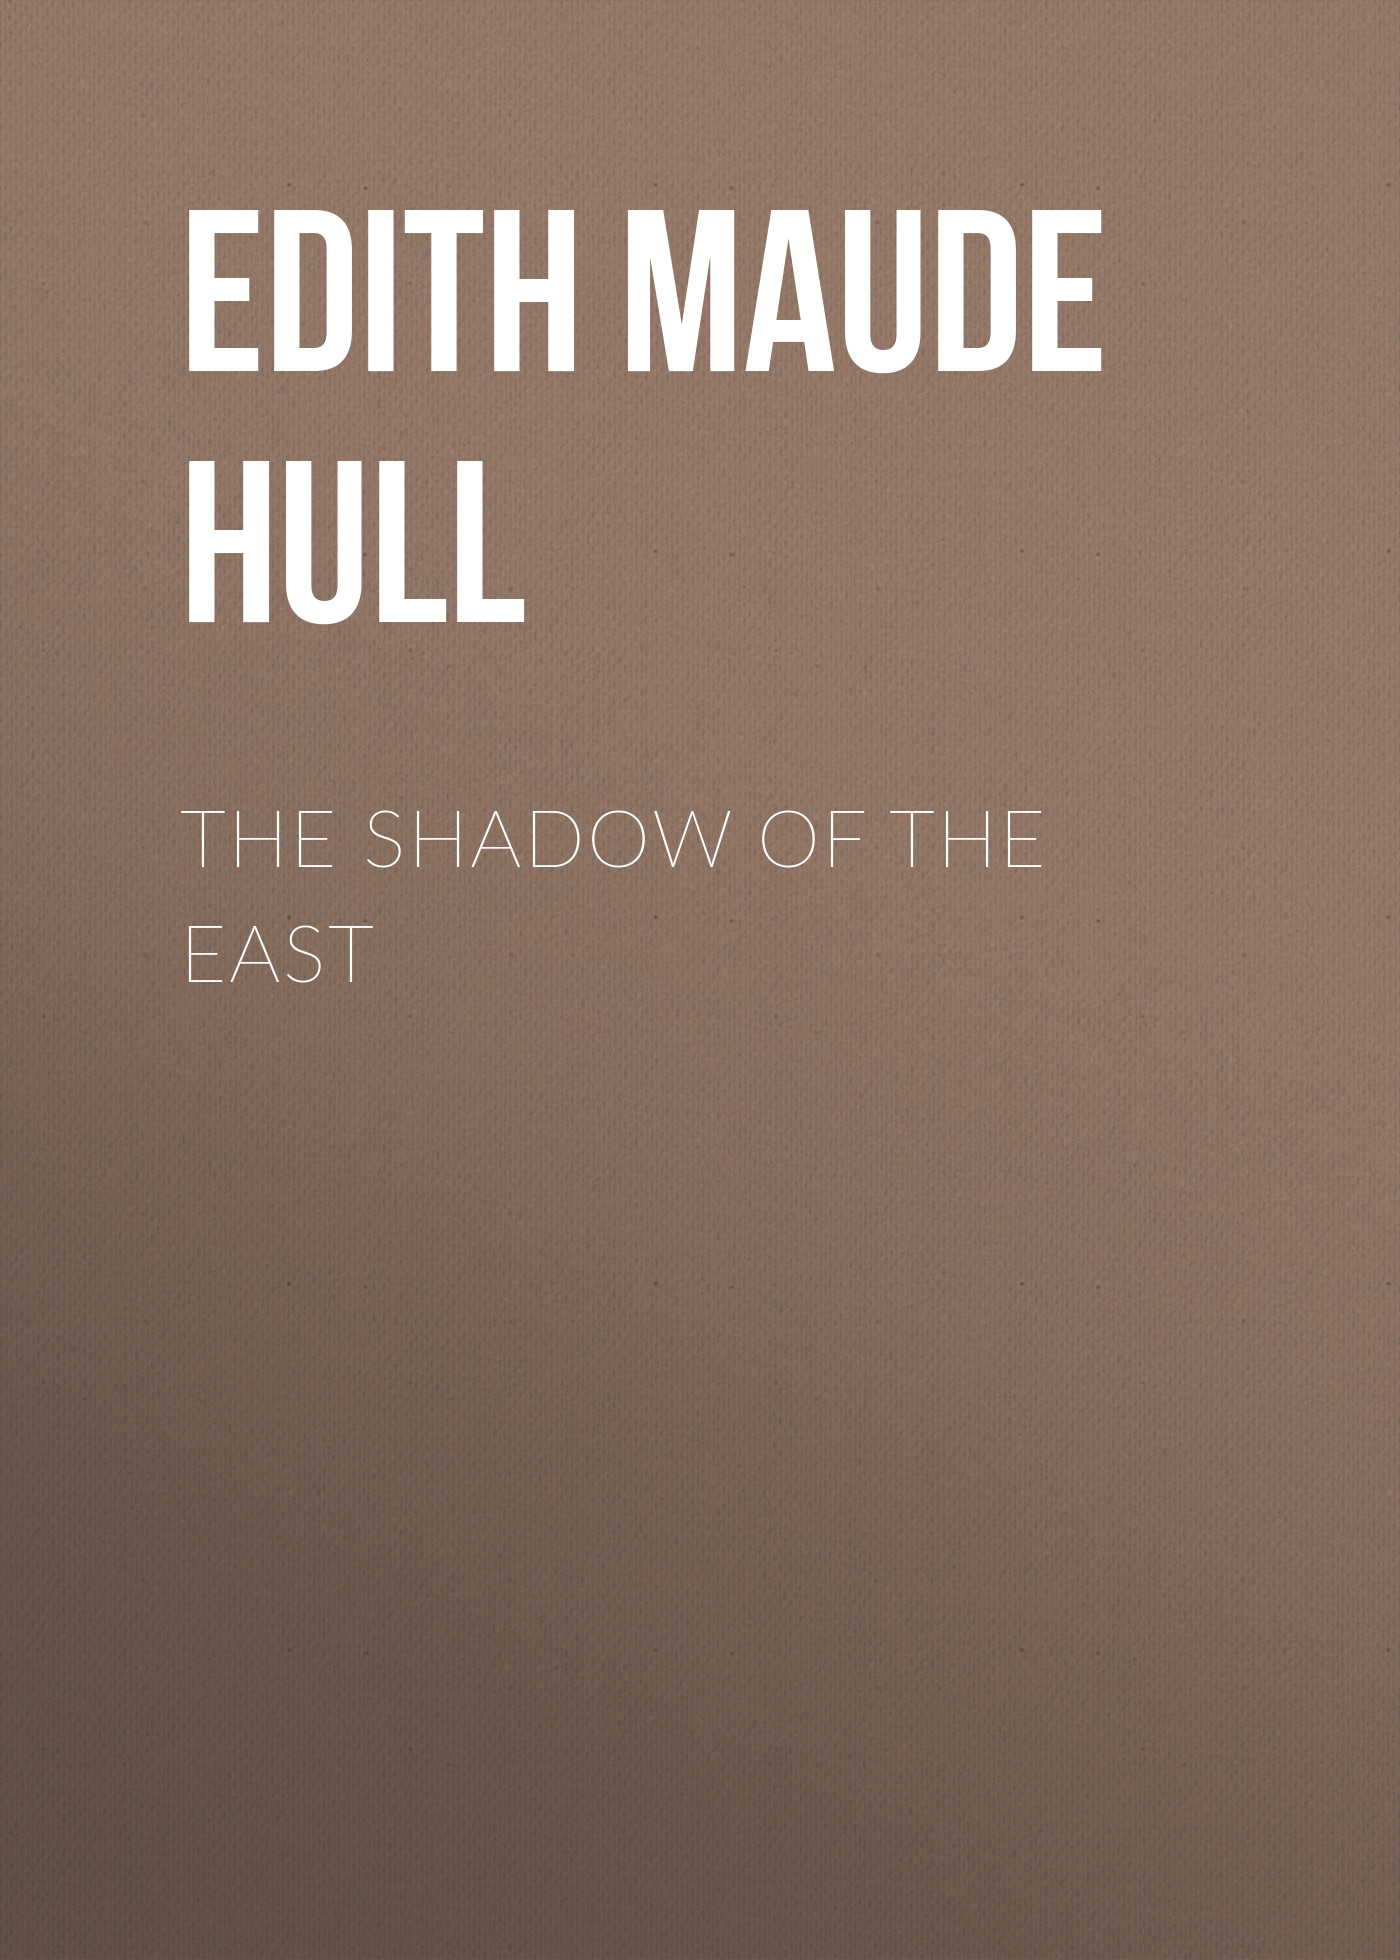 Книга The Shadow of the East из серии , созданная Edith Maude Hull, может относится к жанру Зарубежная классика, Литература 20 века, Зарубежная старинная литература. Стоимость электронной книги The Shadow of the East с идентификатором 36094485 составляет 0 руб.